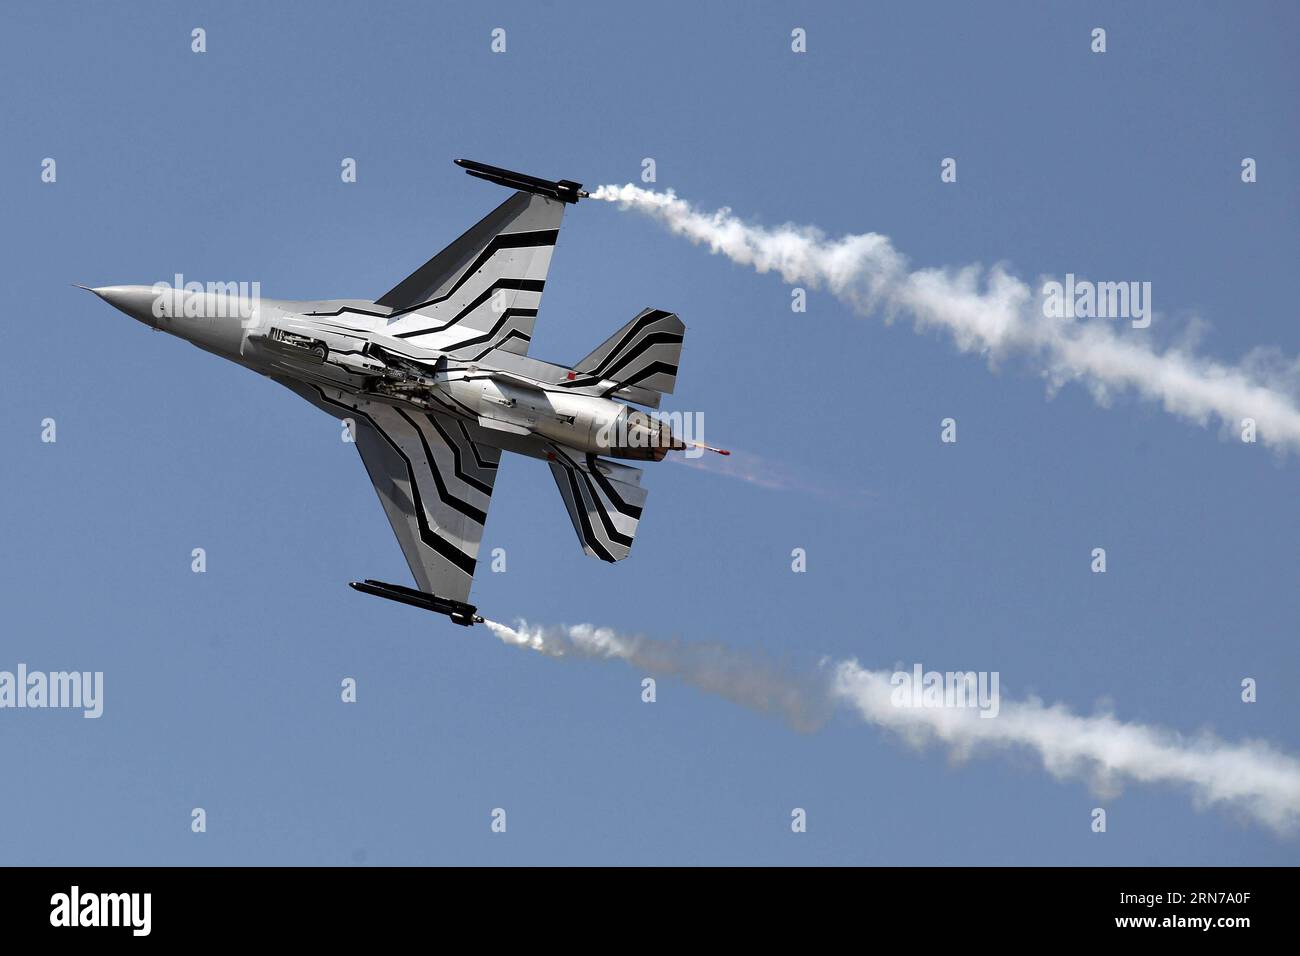 (150829) -- SLIAC, 29 agosto 2015 -- Un F-16 Fighting Falcon dell'Aeronautica militare belga si esibisce durante lo Slovak International Air Fest, nella base aerea di Sliac, Slovacchia, 29 agosto 2015. Lo Slovak International Air Fest (SIAF 2015) ha preso il via sabato presso la base aerea di Sliac nella Slovacchia centrale. ) (lrz) SLOVAKIA-SLIAC-INTERNATIONAL AIR FEST AndrejxKlizan PUBLICATIONxNOTxINxCHN 150829 agosto 29 2015 un F 16 Fighting Falcon dell'aeronautica belga esegue durante la slovacca International Air Close nella base aerea slovacca Aug 29 2015 l'aria internazionale slovacca Close 2015 è iniziata PRESSO la base aerea di Centr Foto Stock